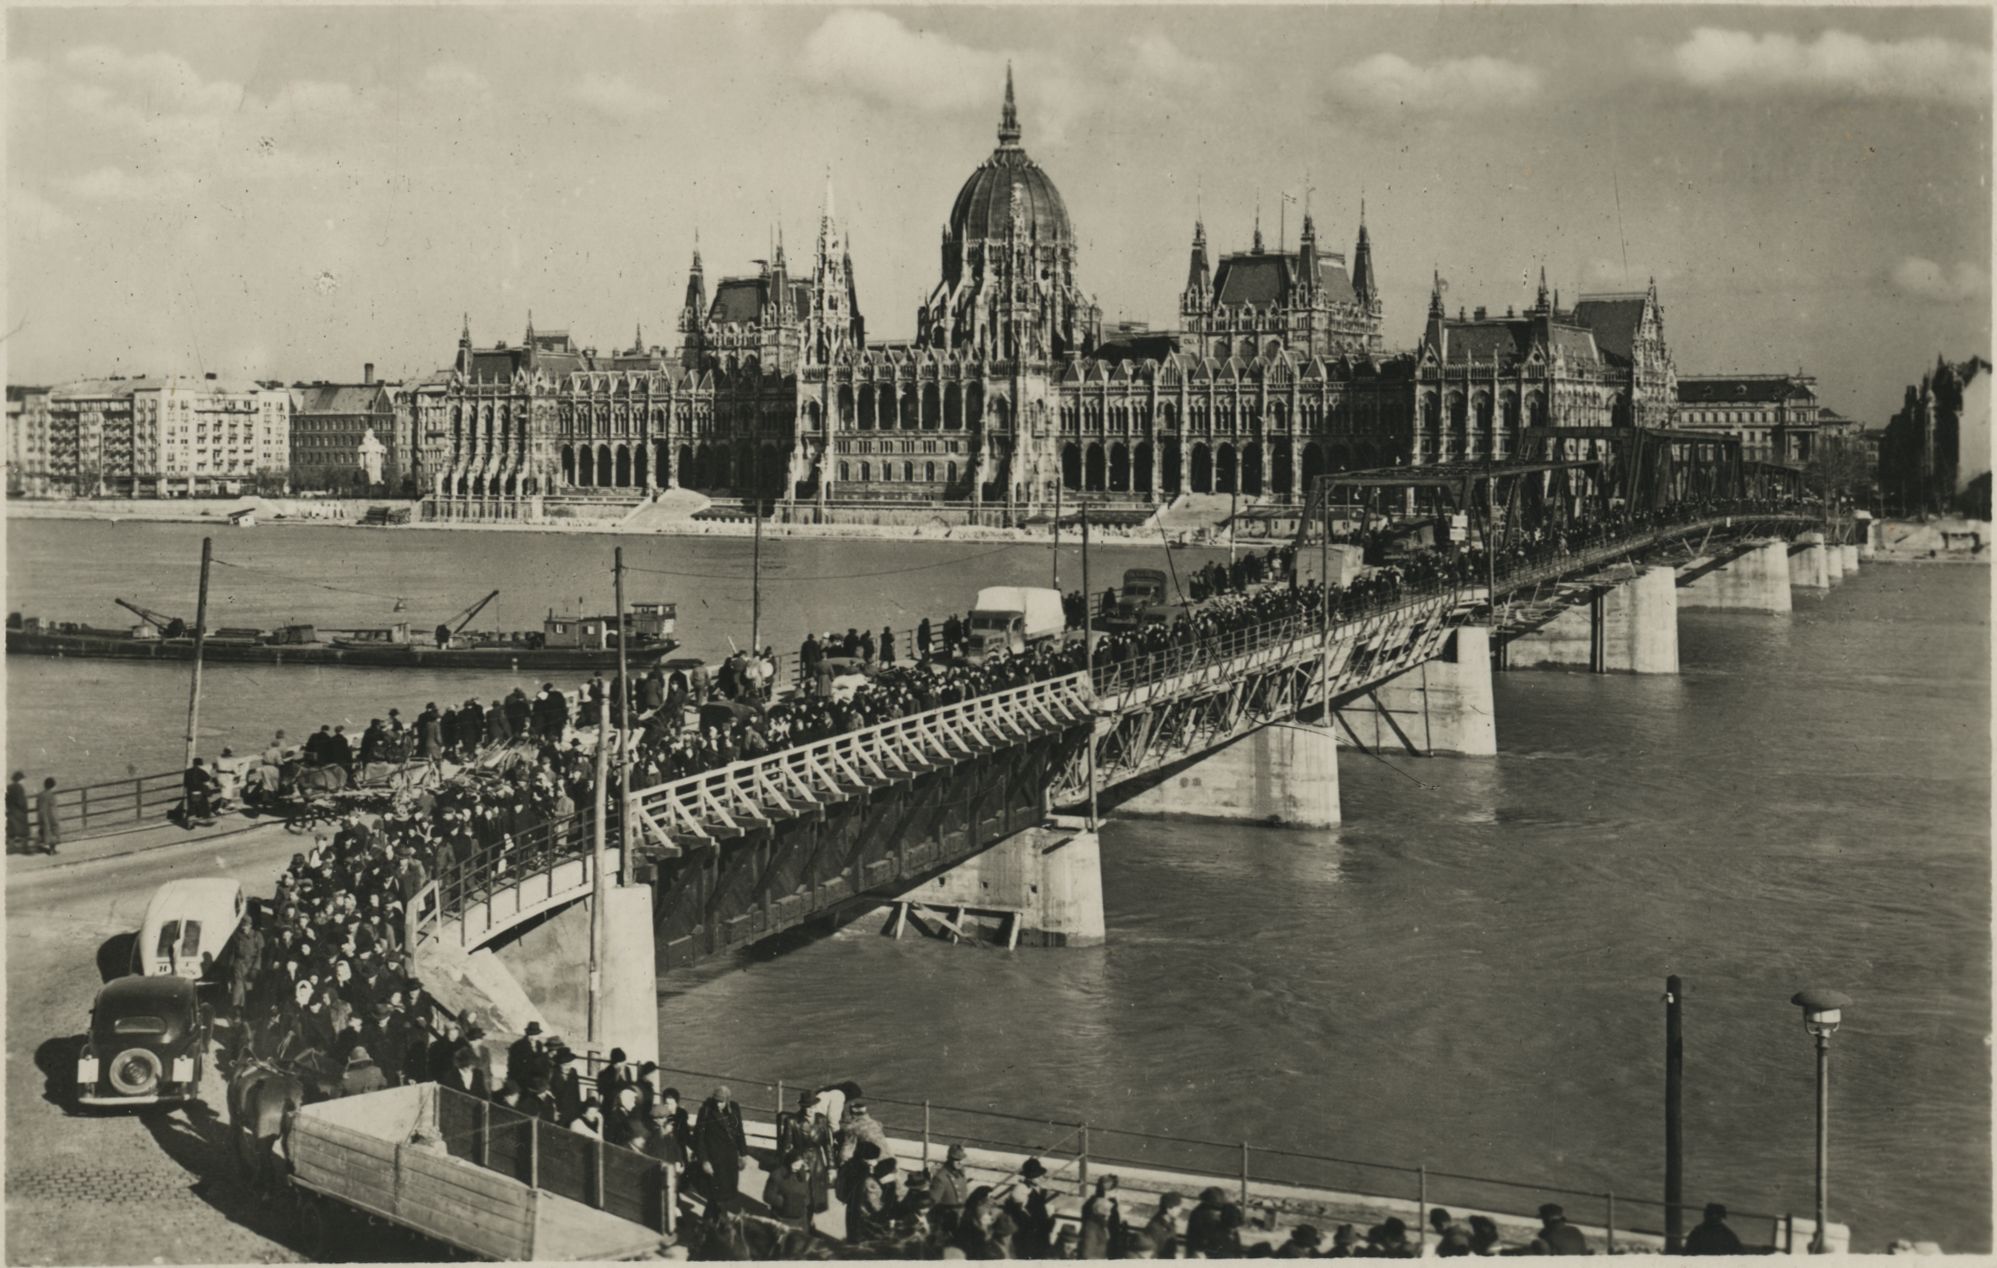 Az egymástól elszakított városrészek között egy időben a Kossuth híd jelentette a legfőbb kapcsolatot. Képeslap, 1950 körül (BFL XIV.243.d.2)